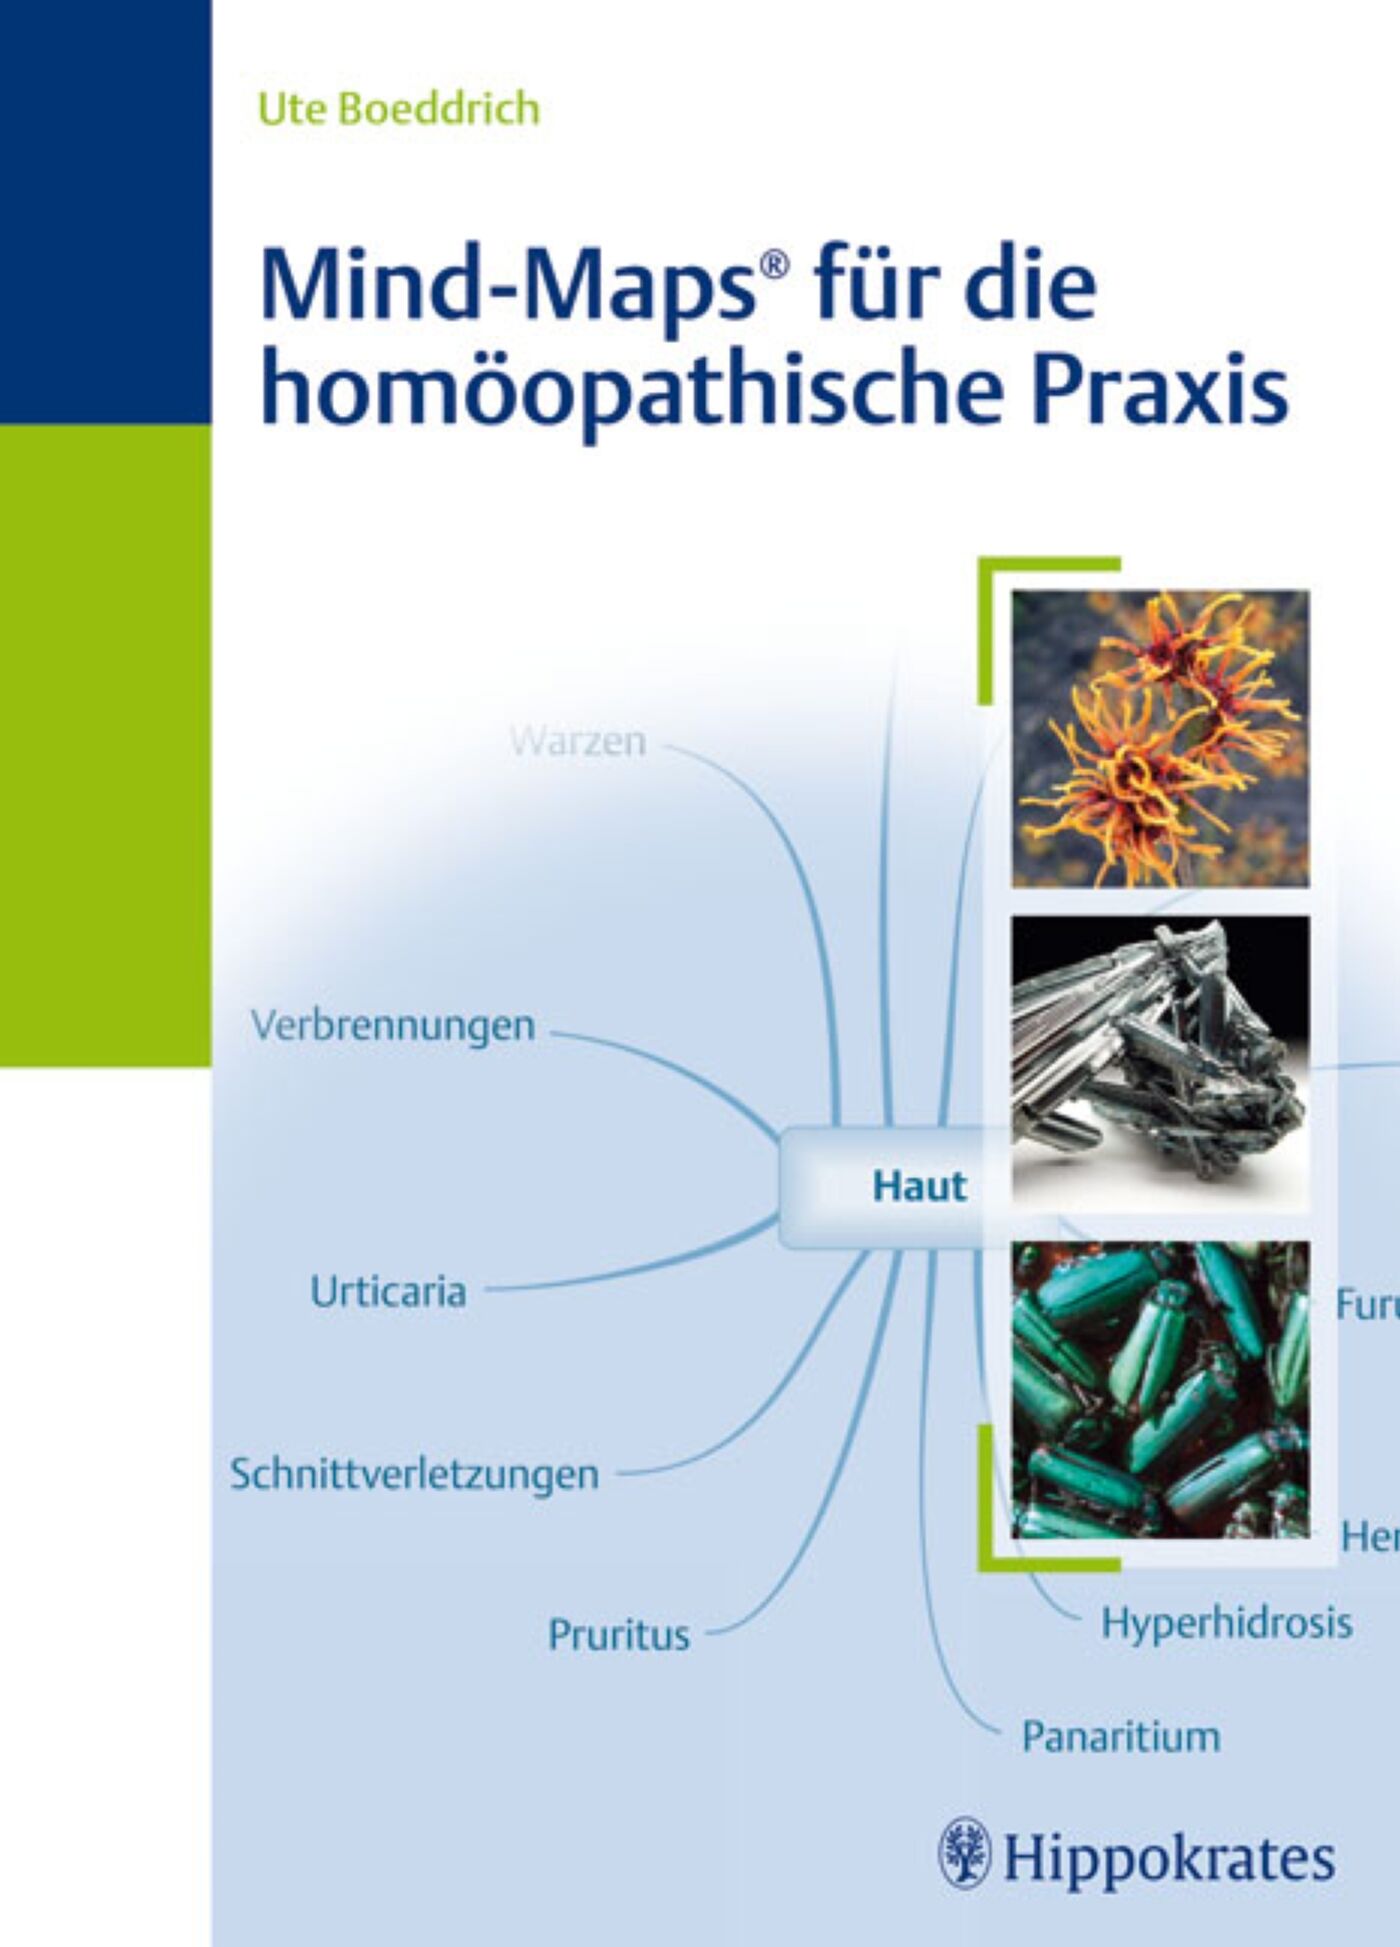 Mind-Maps für die homöopathische Praxis, 9783830455738